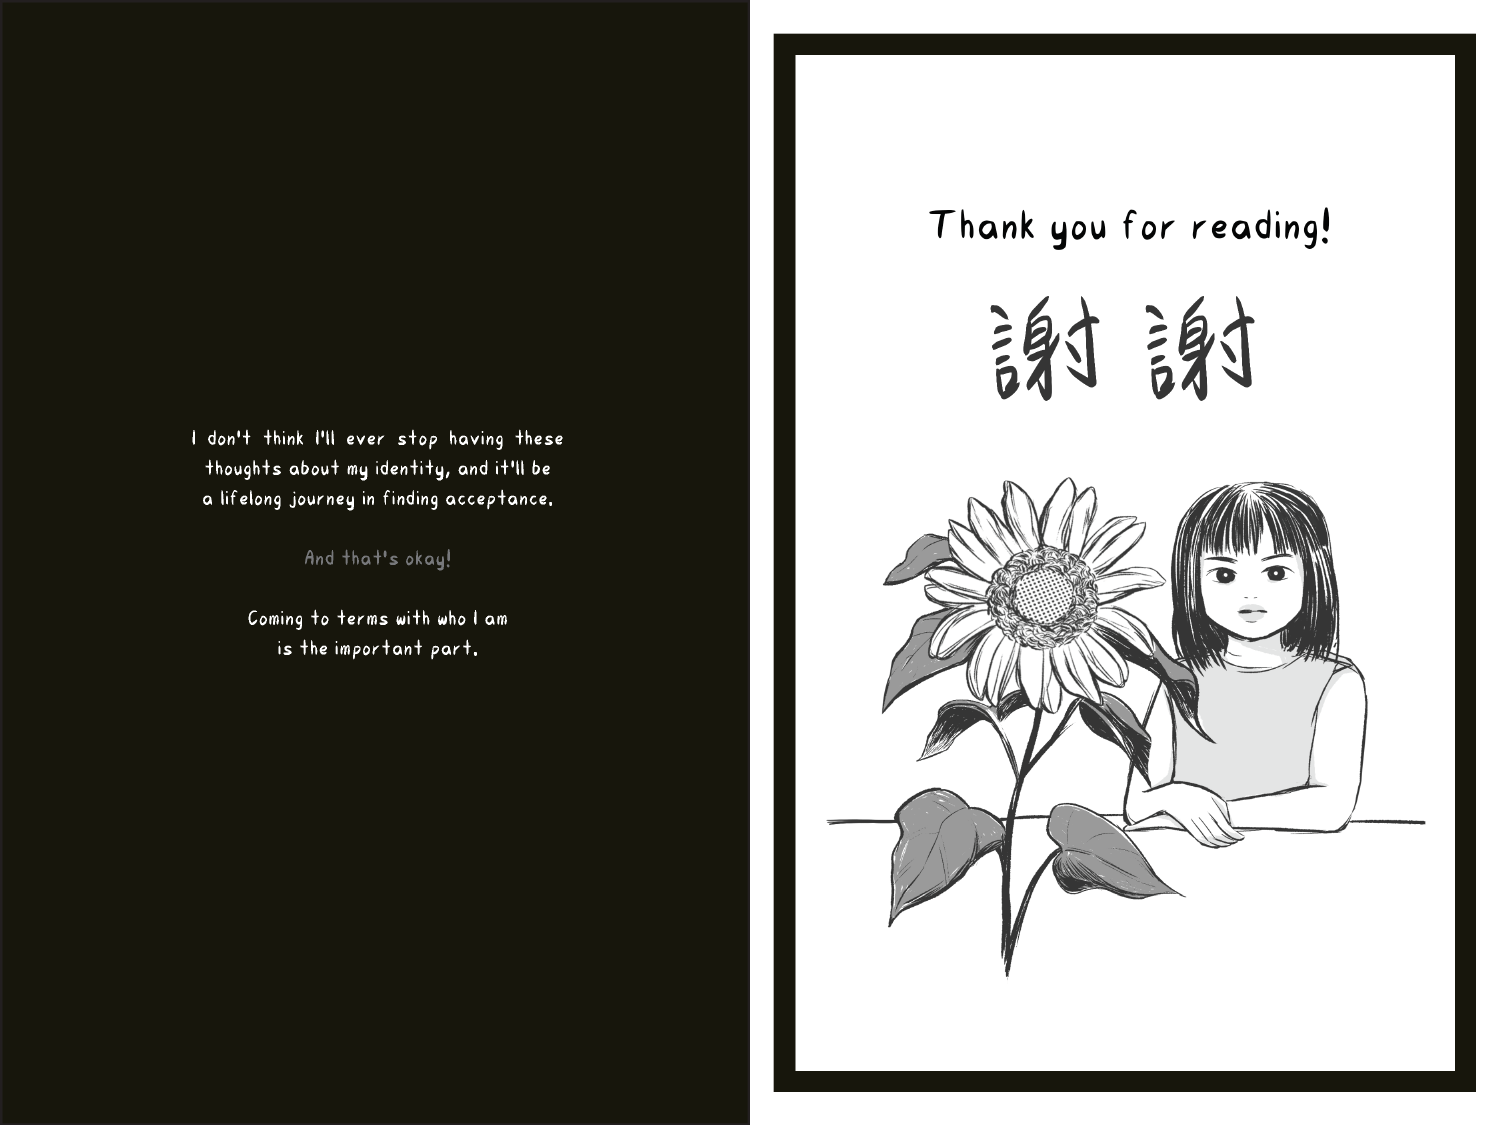 Yunyun: Loraine Book